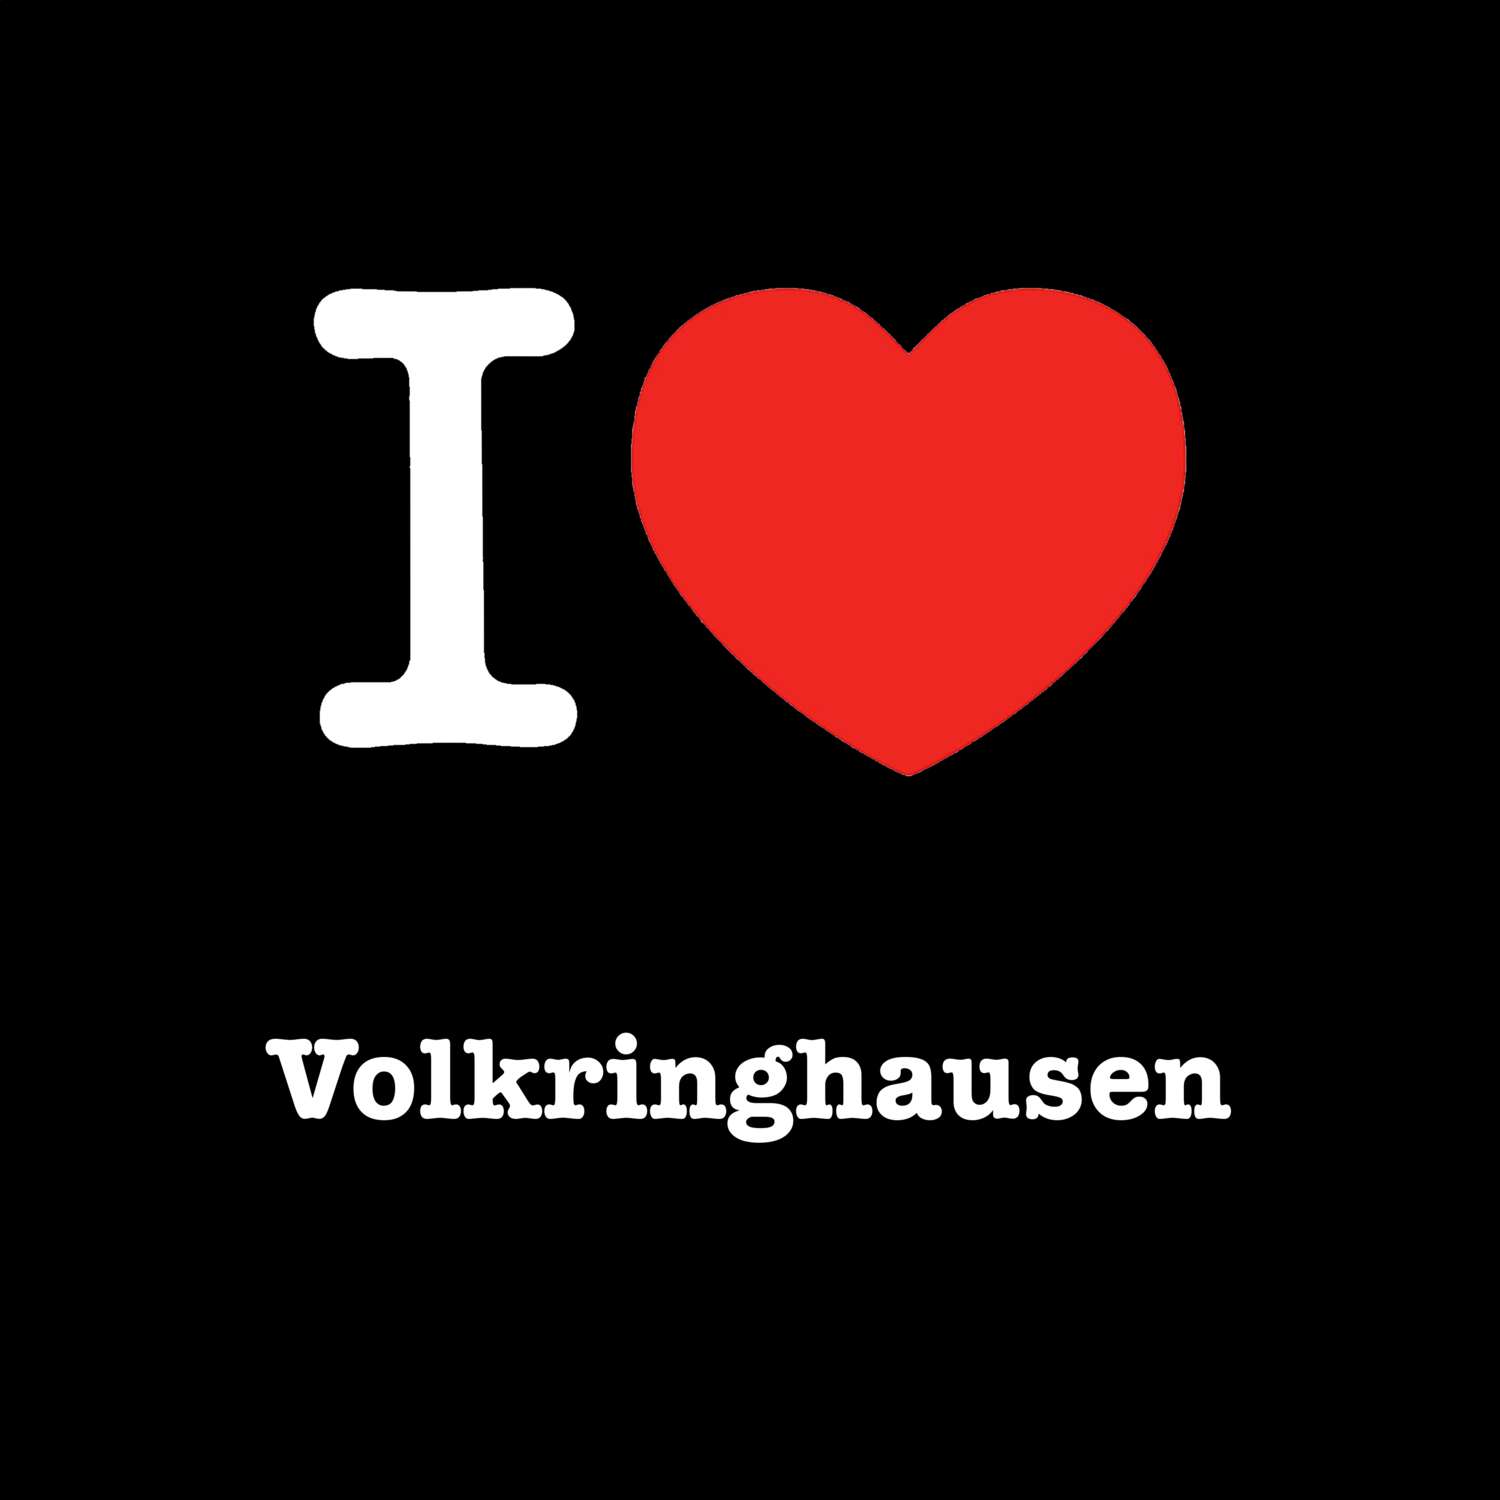 Volkringhausen T-Shirt »I love«